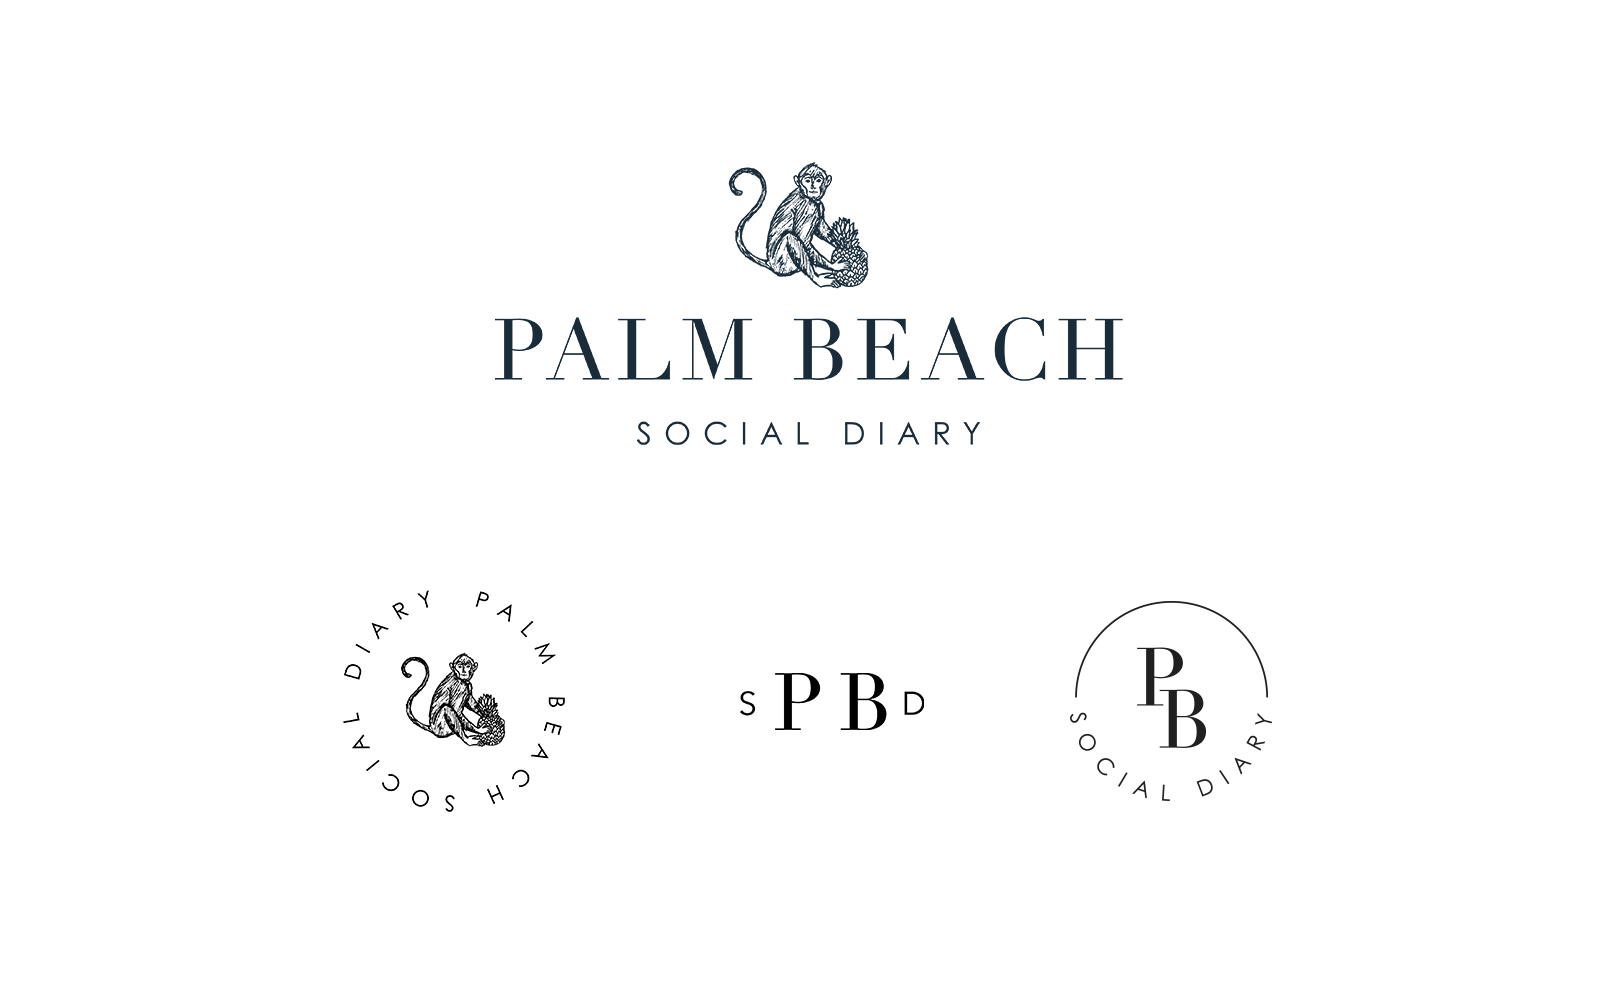 Palm Beach Social Diaries alternate logos.